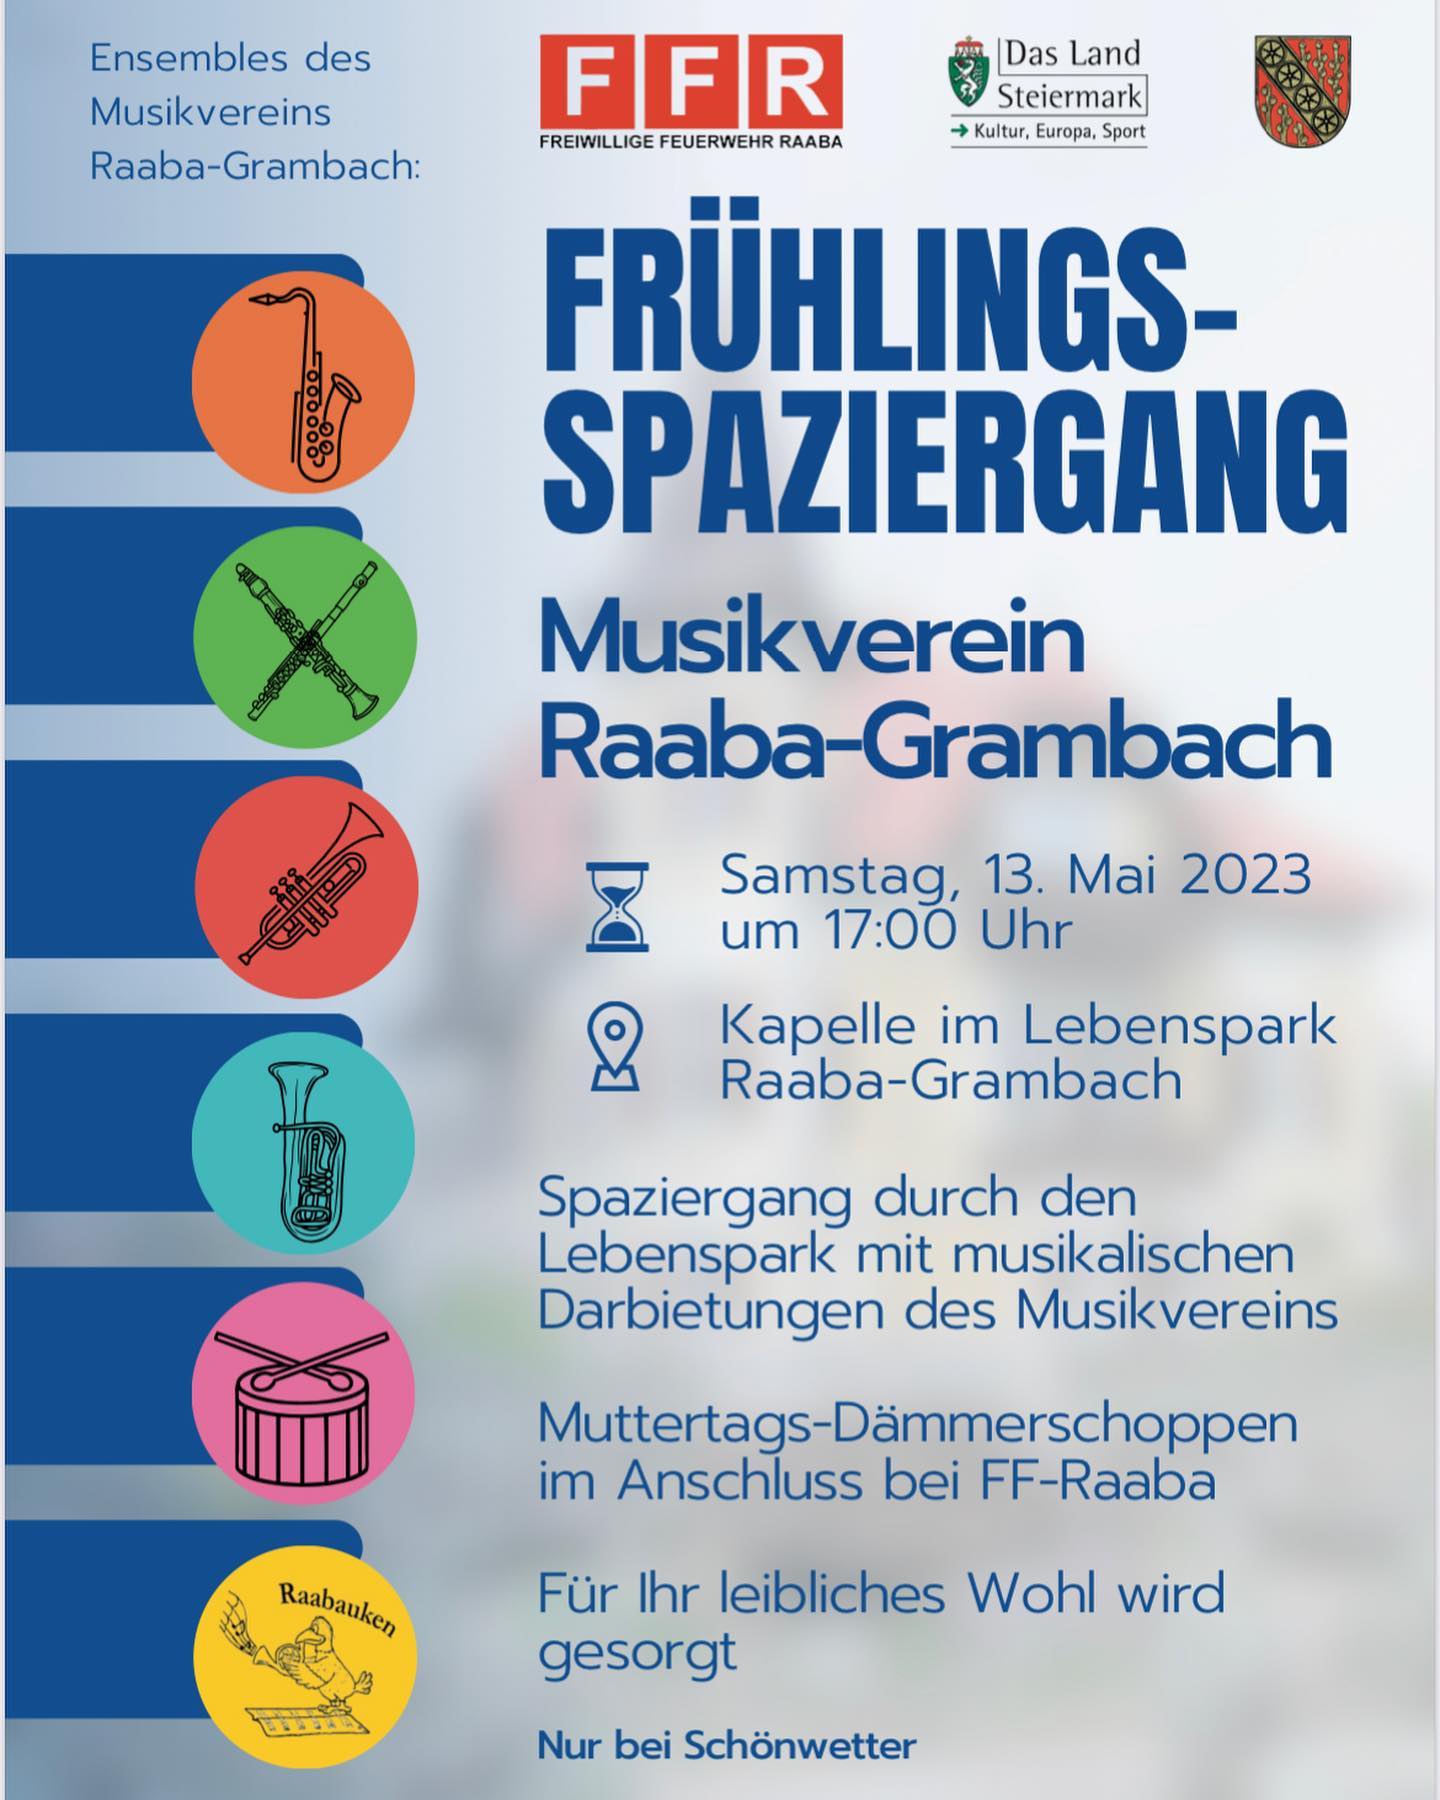 Frühlingssparziergang Musikverein Raaba-Grambach mit Muttertags-Dämmerschoppen